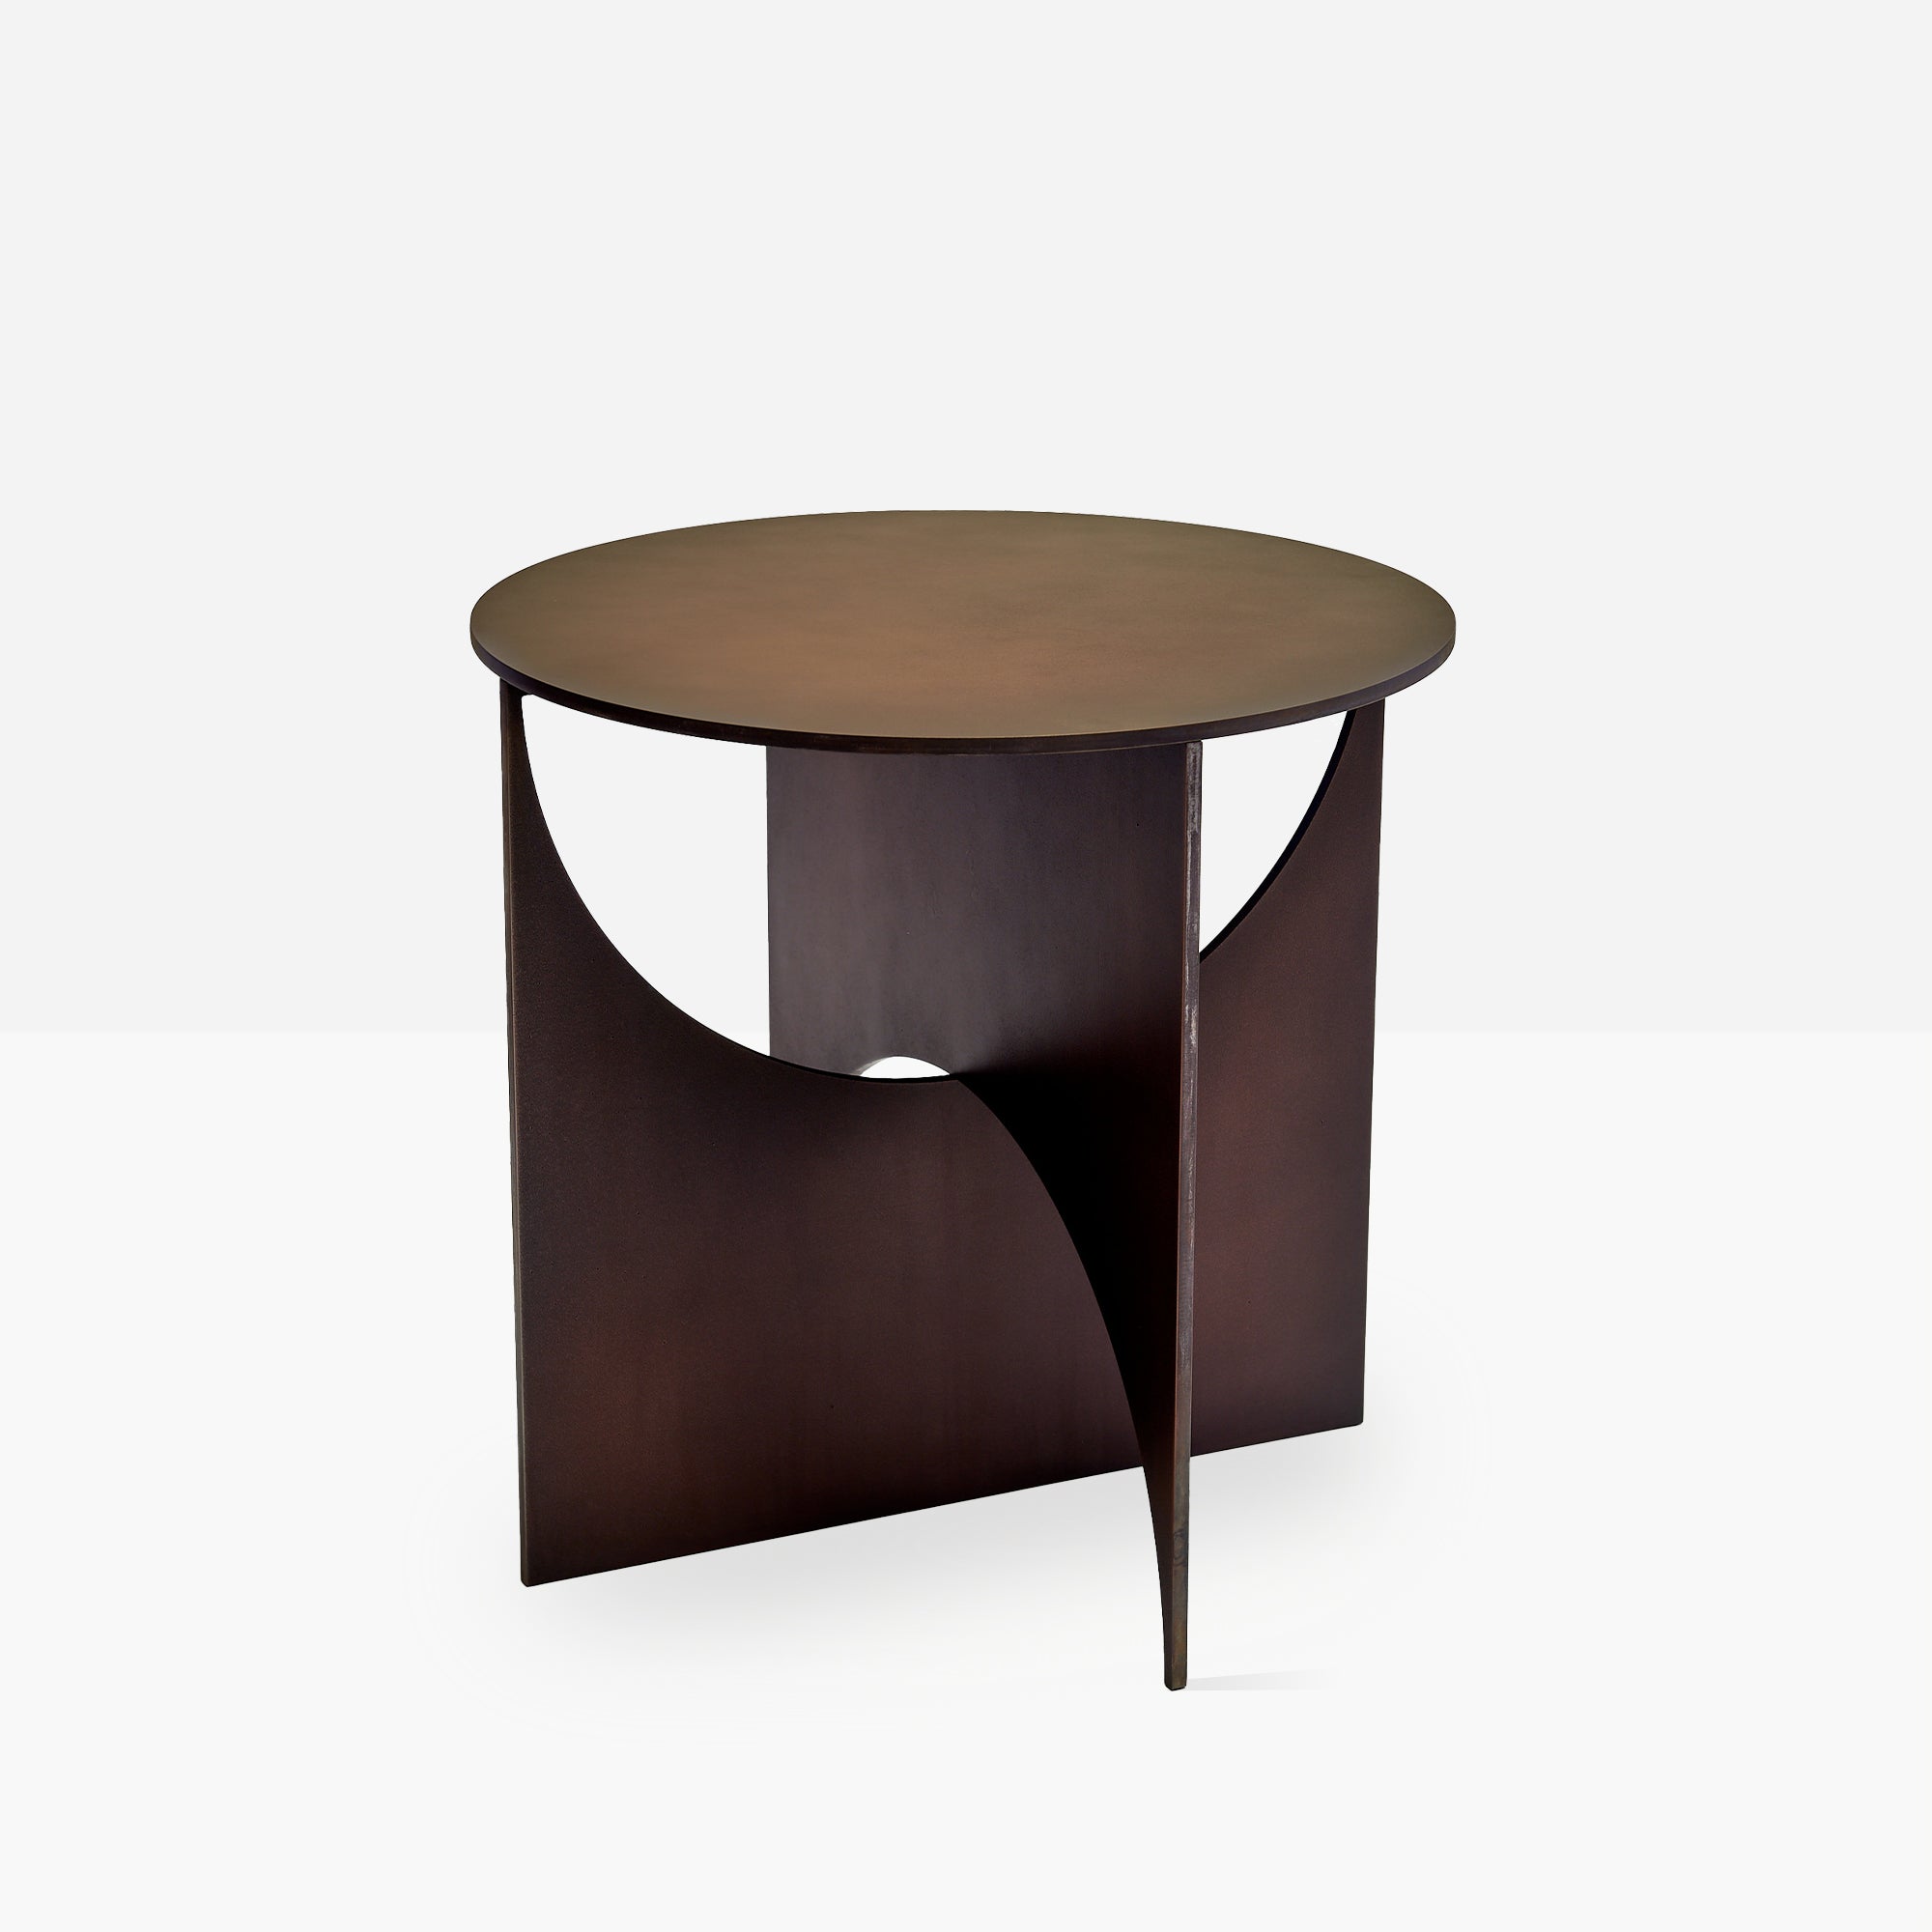 Iris Steel Table by Frank Penders